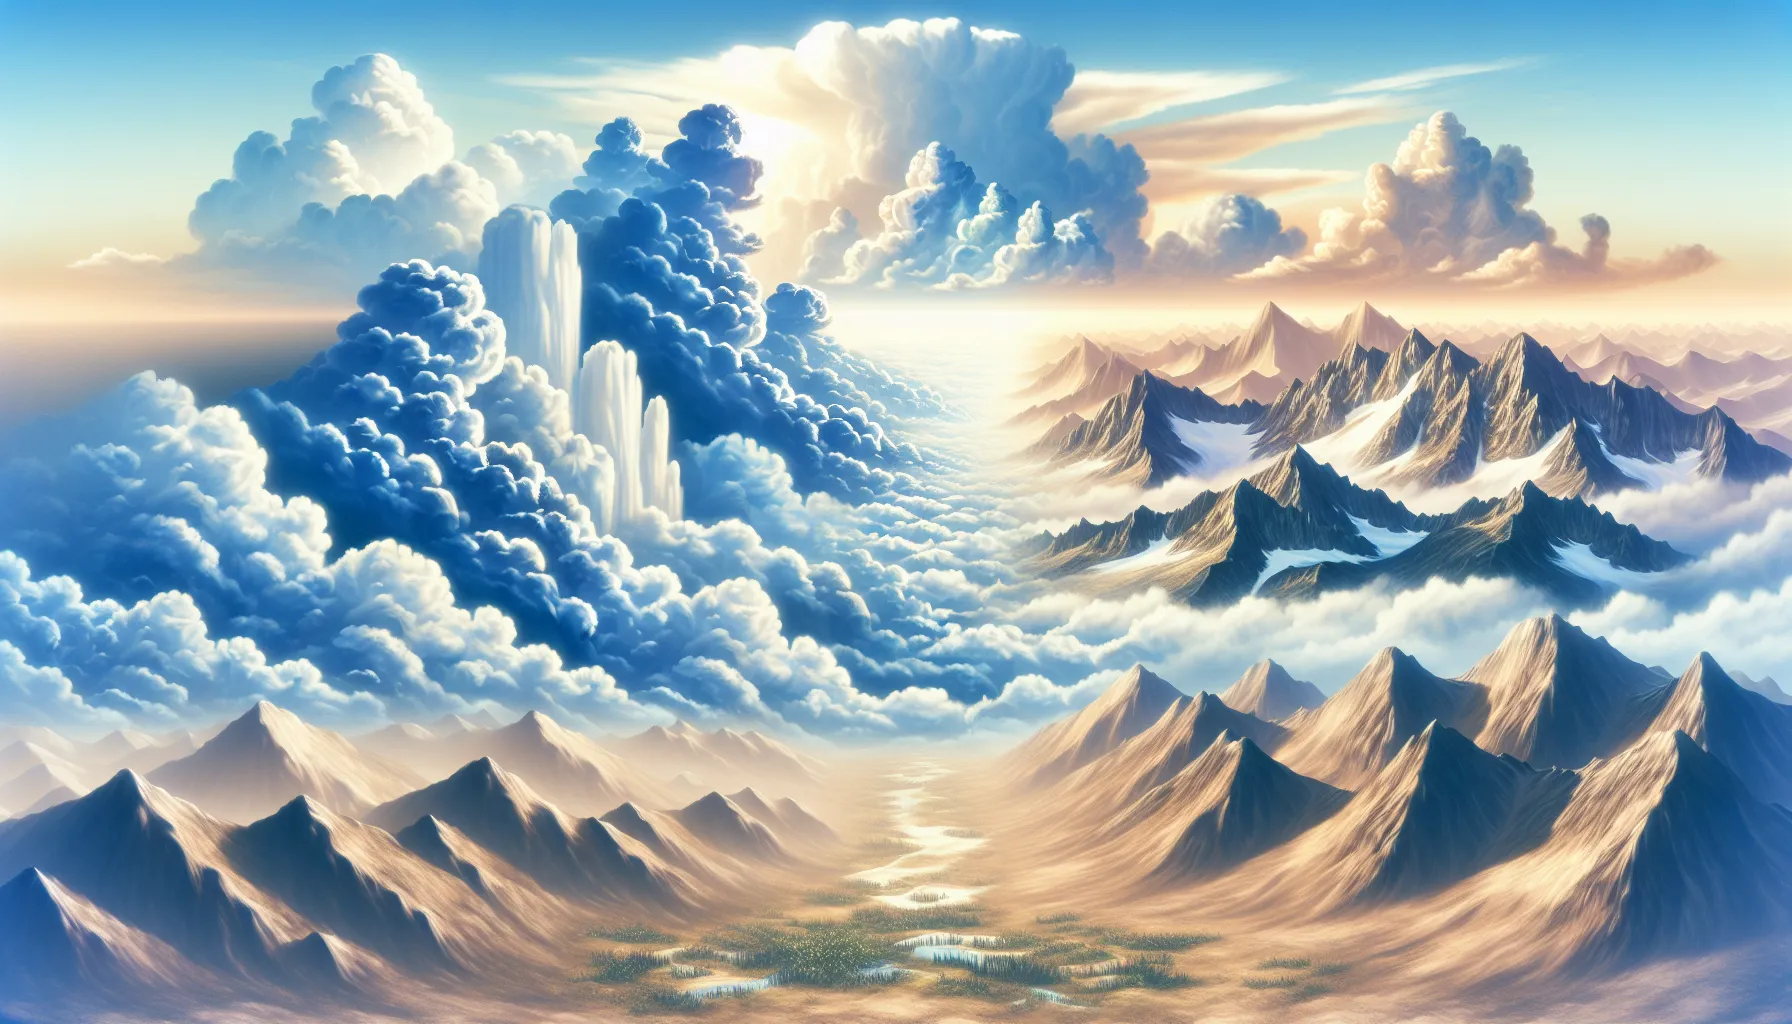 'Ilustración de un paisaje celestial con nubes y montañas que representan la fugacidad del mundo terrenal en contraste con la eternidad de lo divino'.